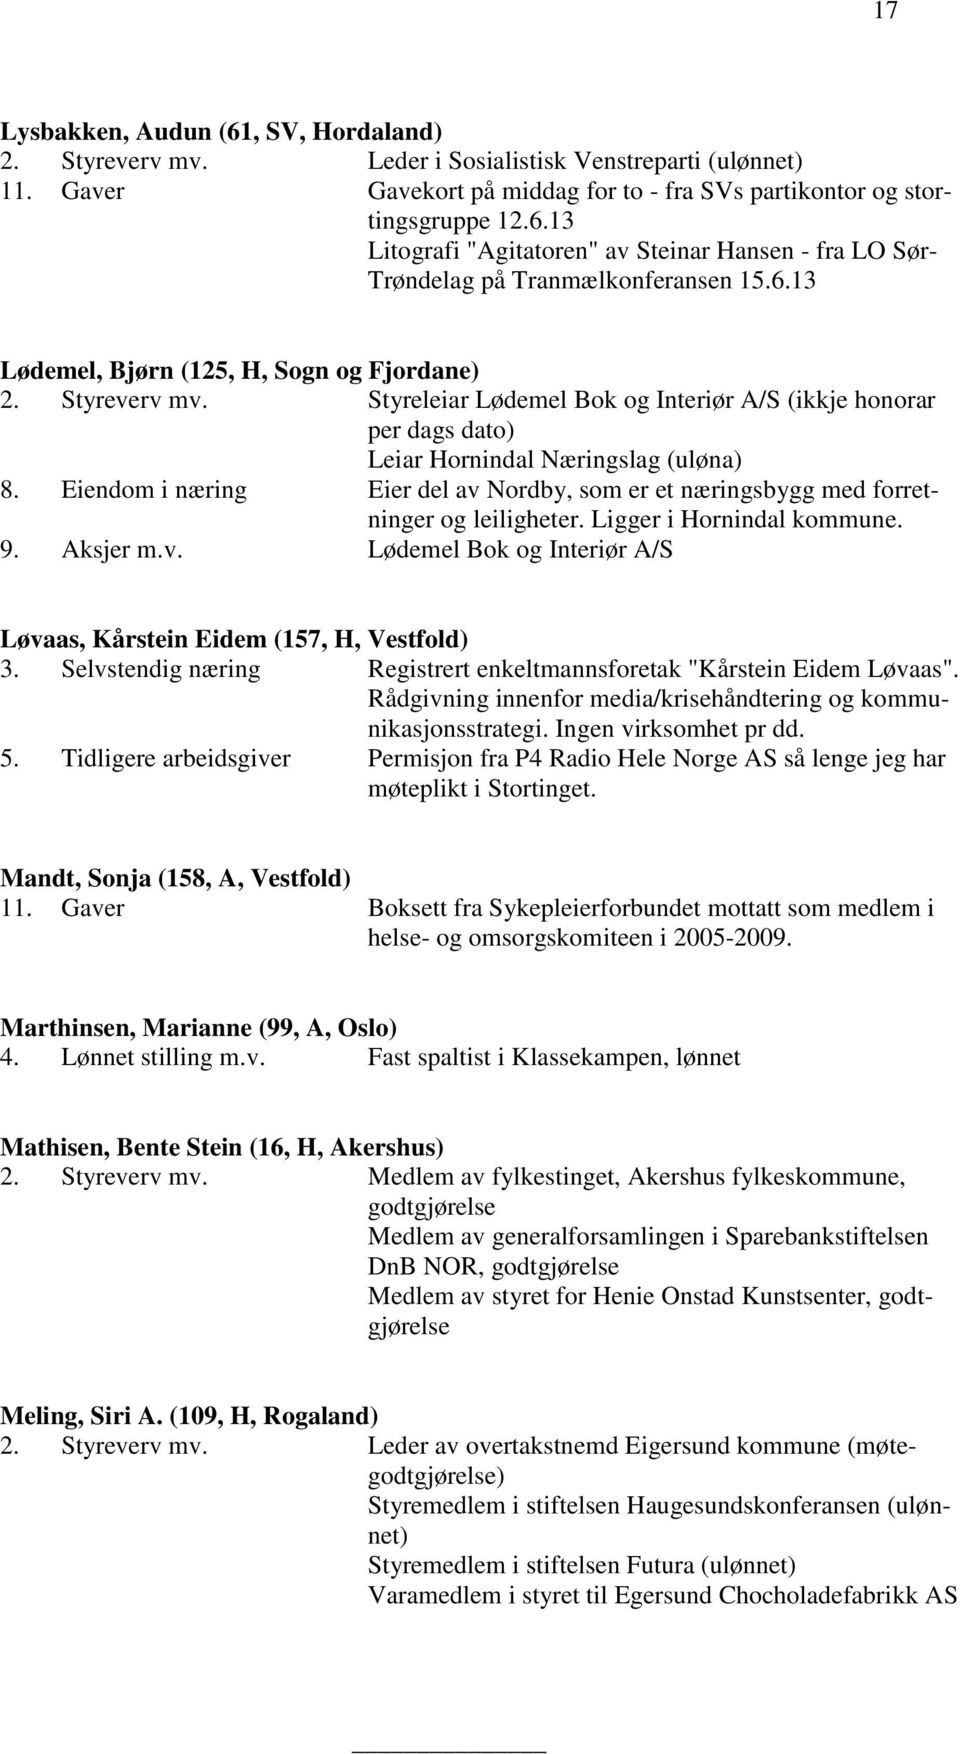 Eiendom i næring Eier del av Nordby, som er et næringsbygg med forretninger og leiligheter. Ligger i Hornindal kommune. 9. Aksjer m.v. Lødemel Bok og Interiør A/S Løvaas, Kårstein Eidem (157, H, Vestfold) 3.